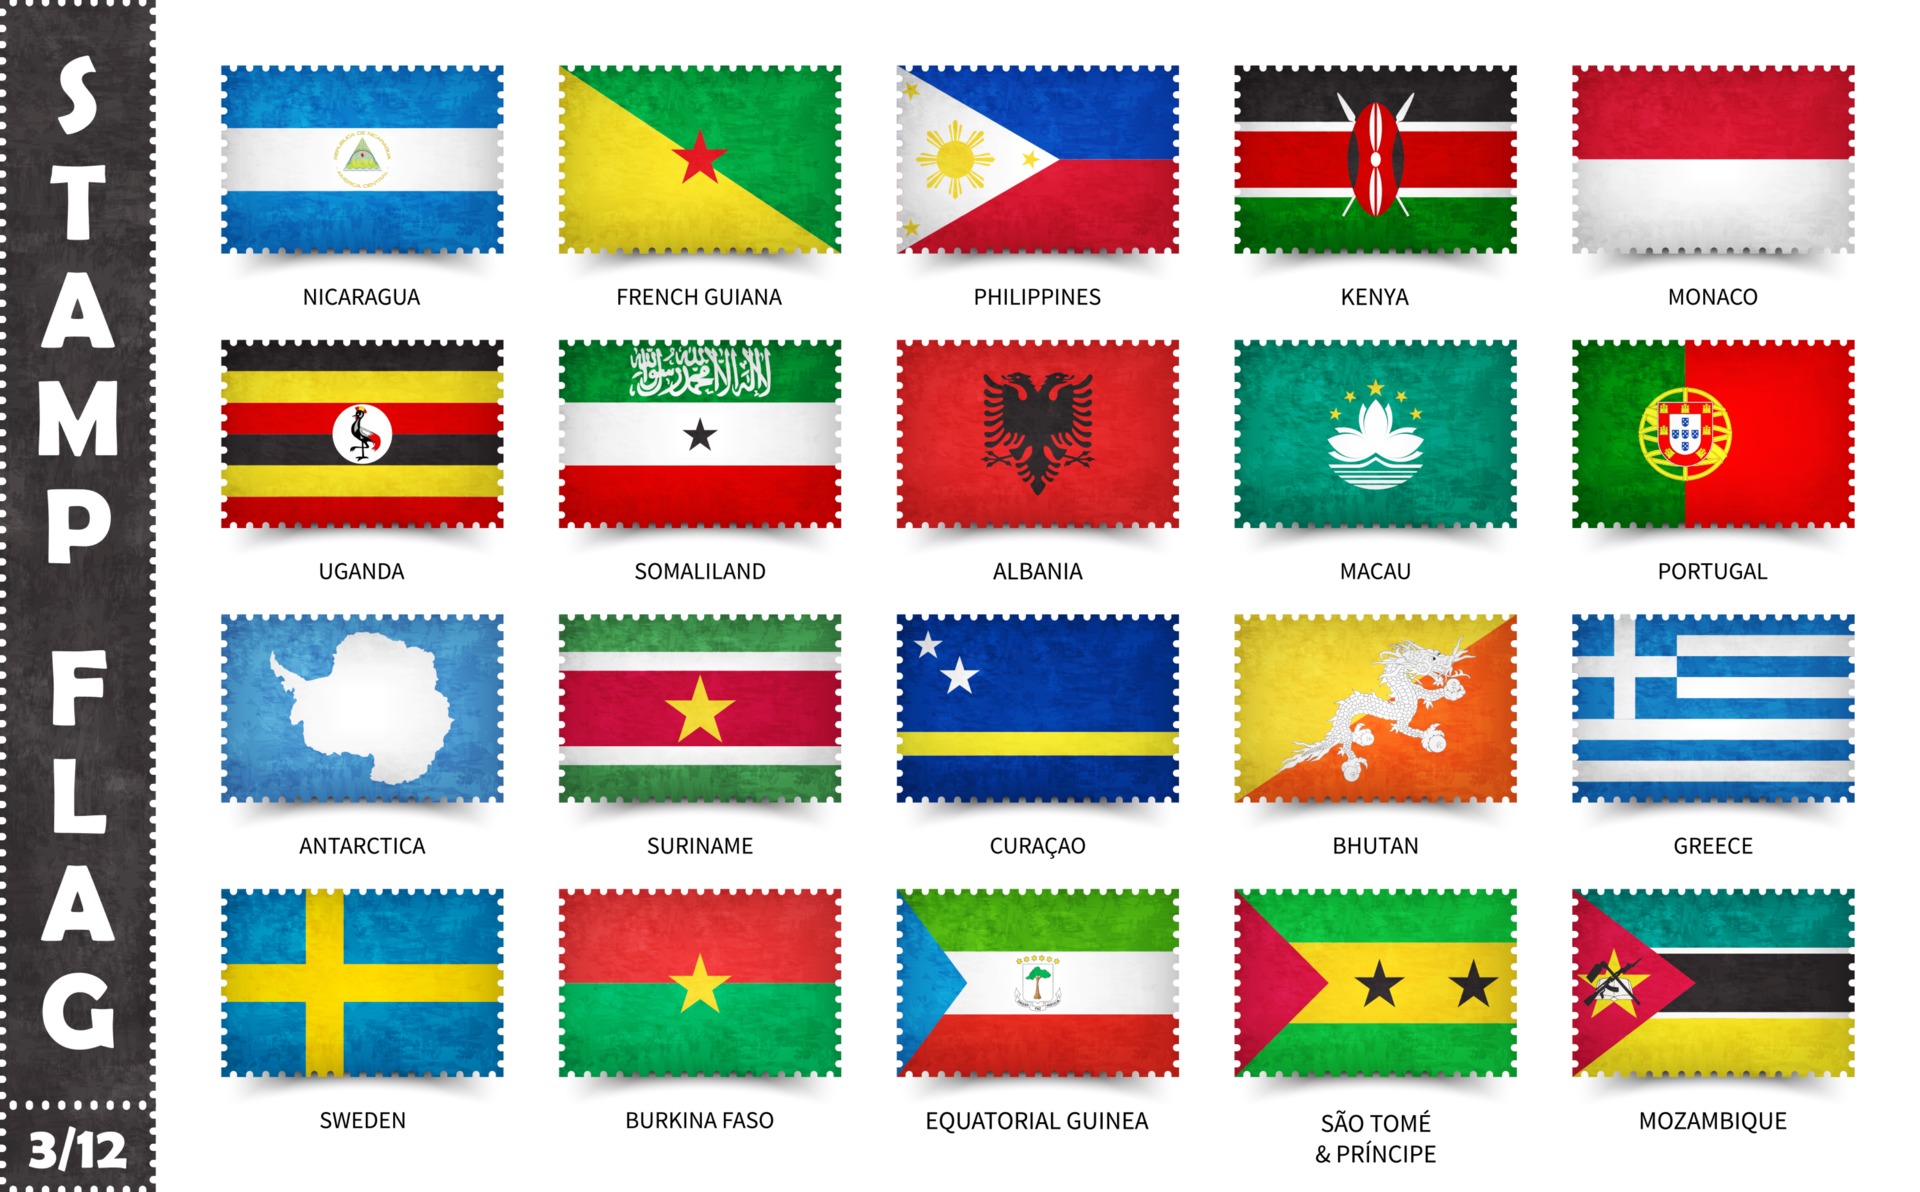 Флаг образец. У какой страны флаг не прямоугольной формы. Флаги стран Никарагуа и Сирии.